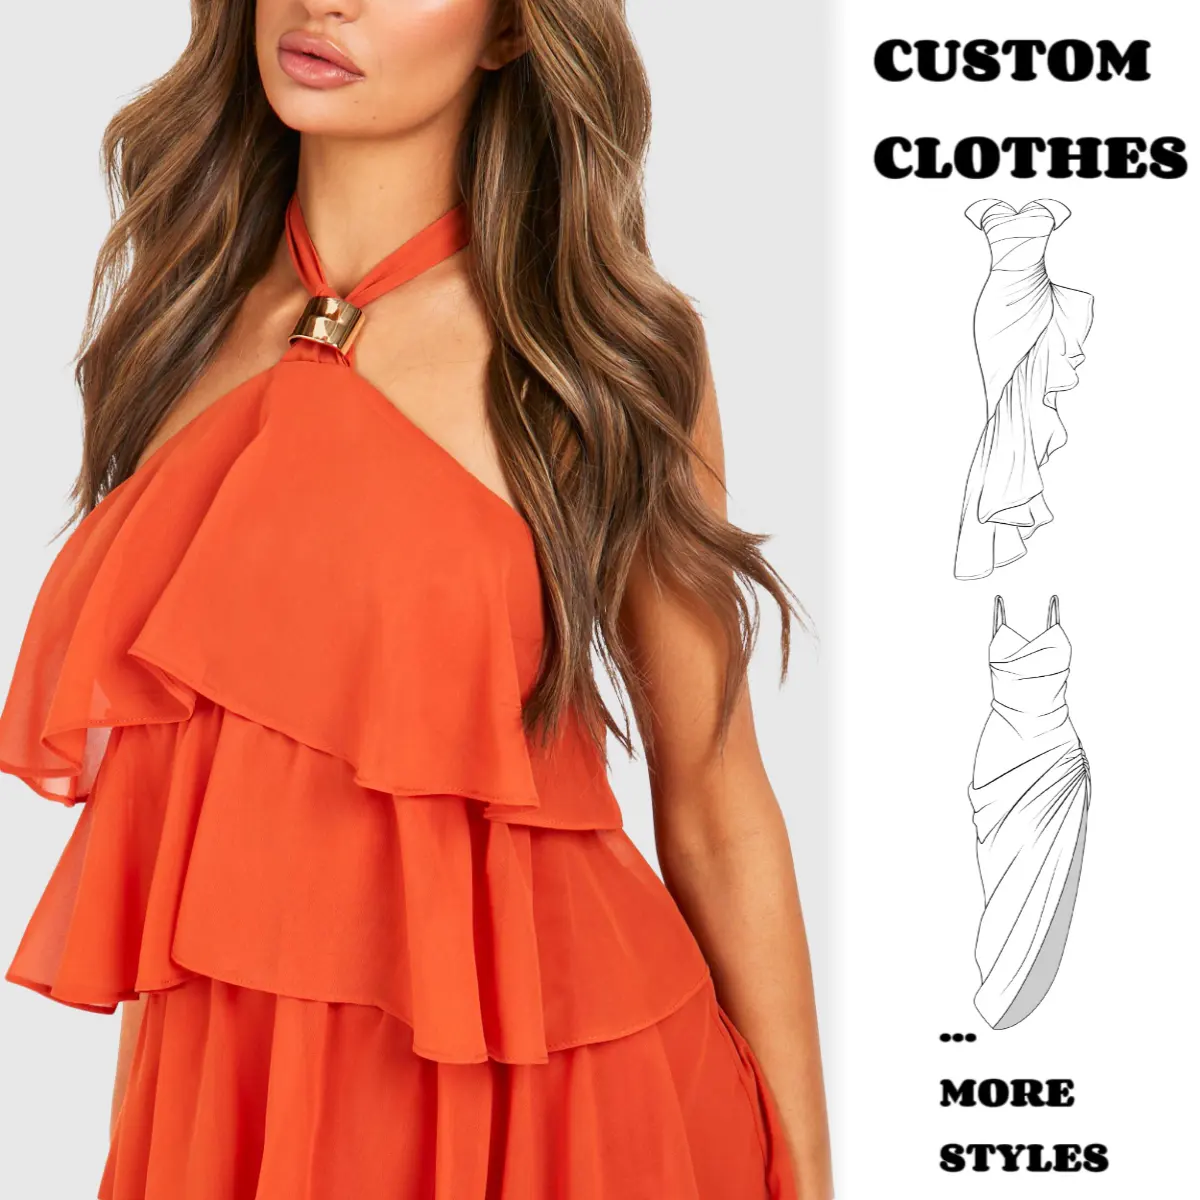 Personalizado nuevo superventas mujeres vestido de gasa naranja sin mangas con cuello en V corbata Maxi vestido vestidos de verano mujeres casual